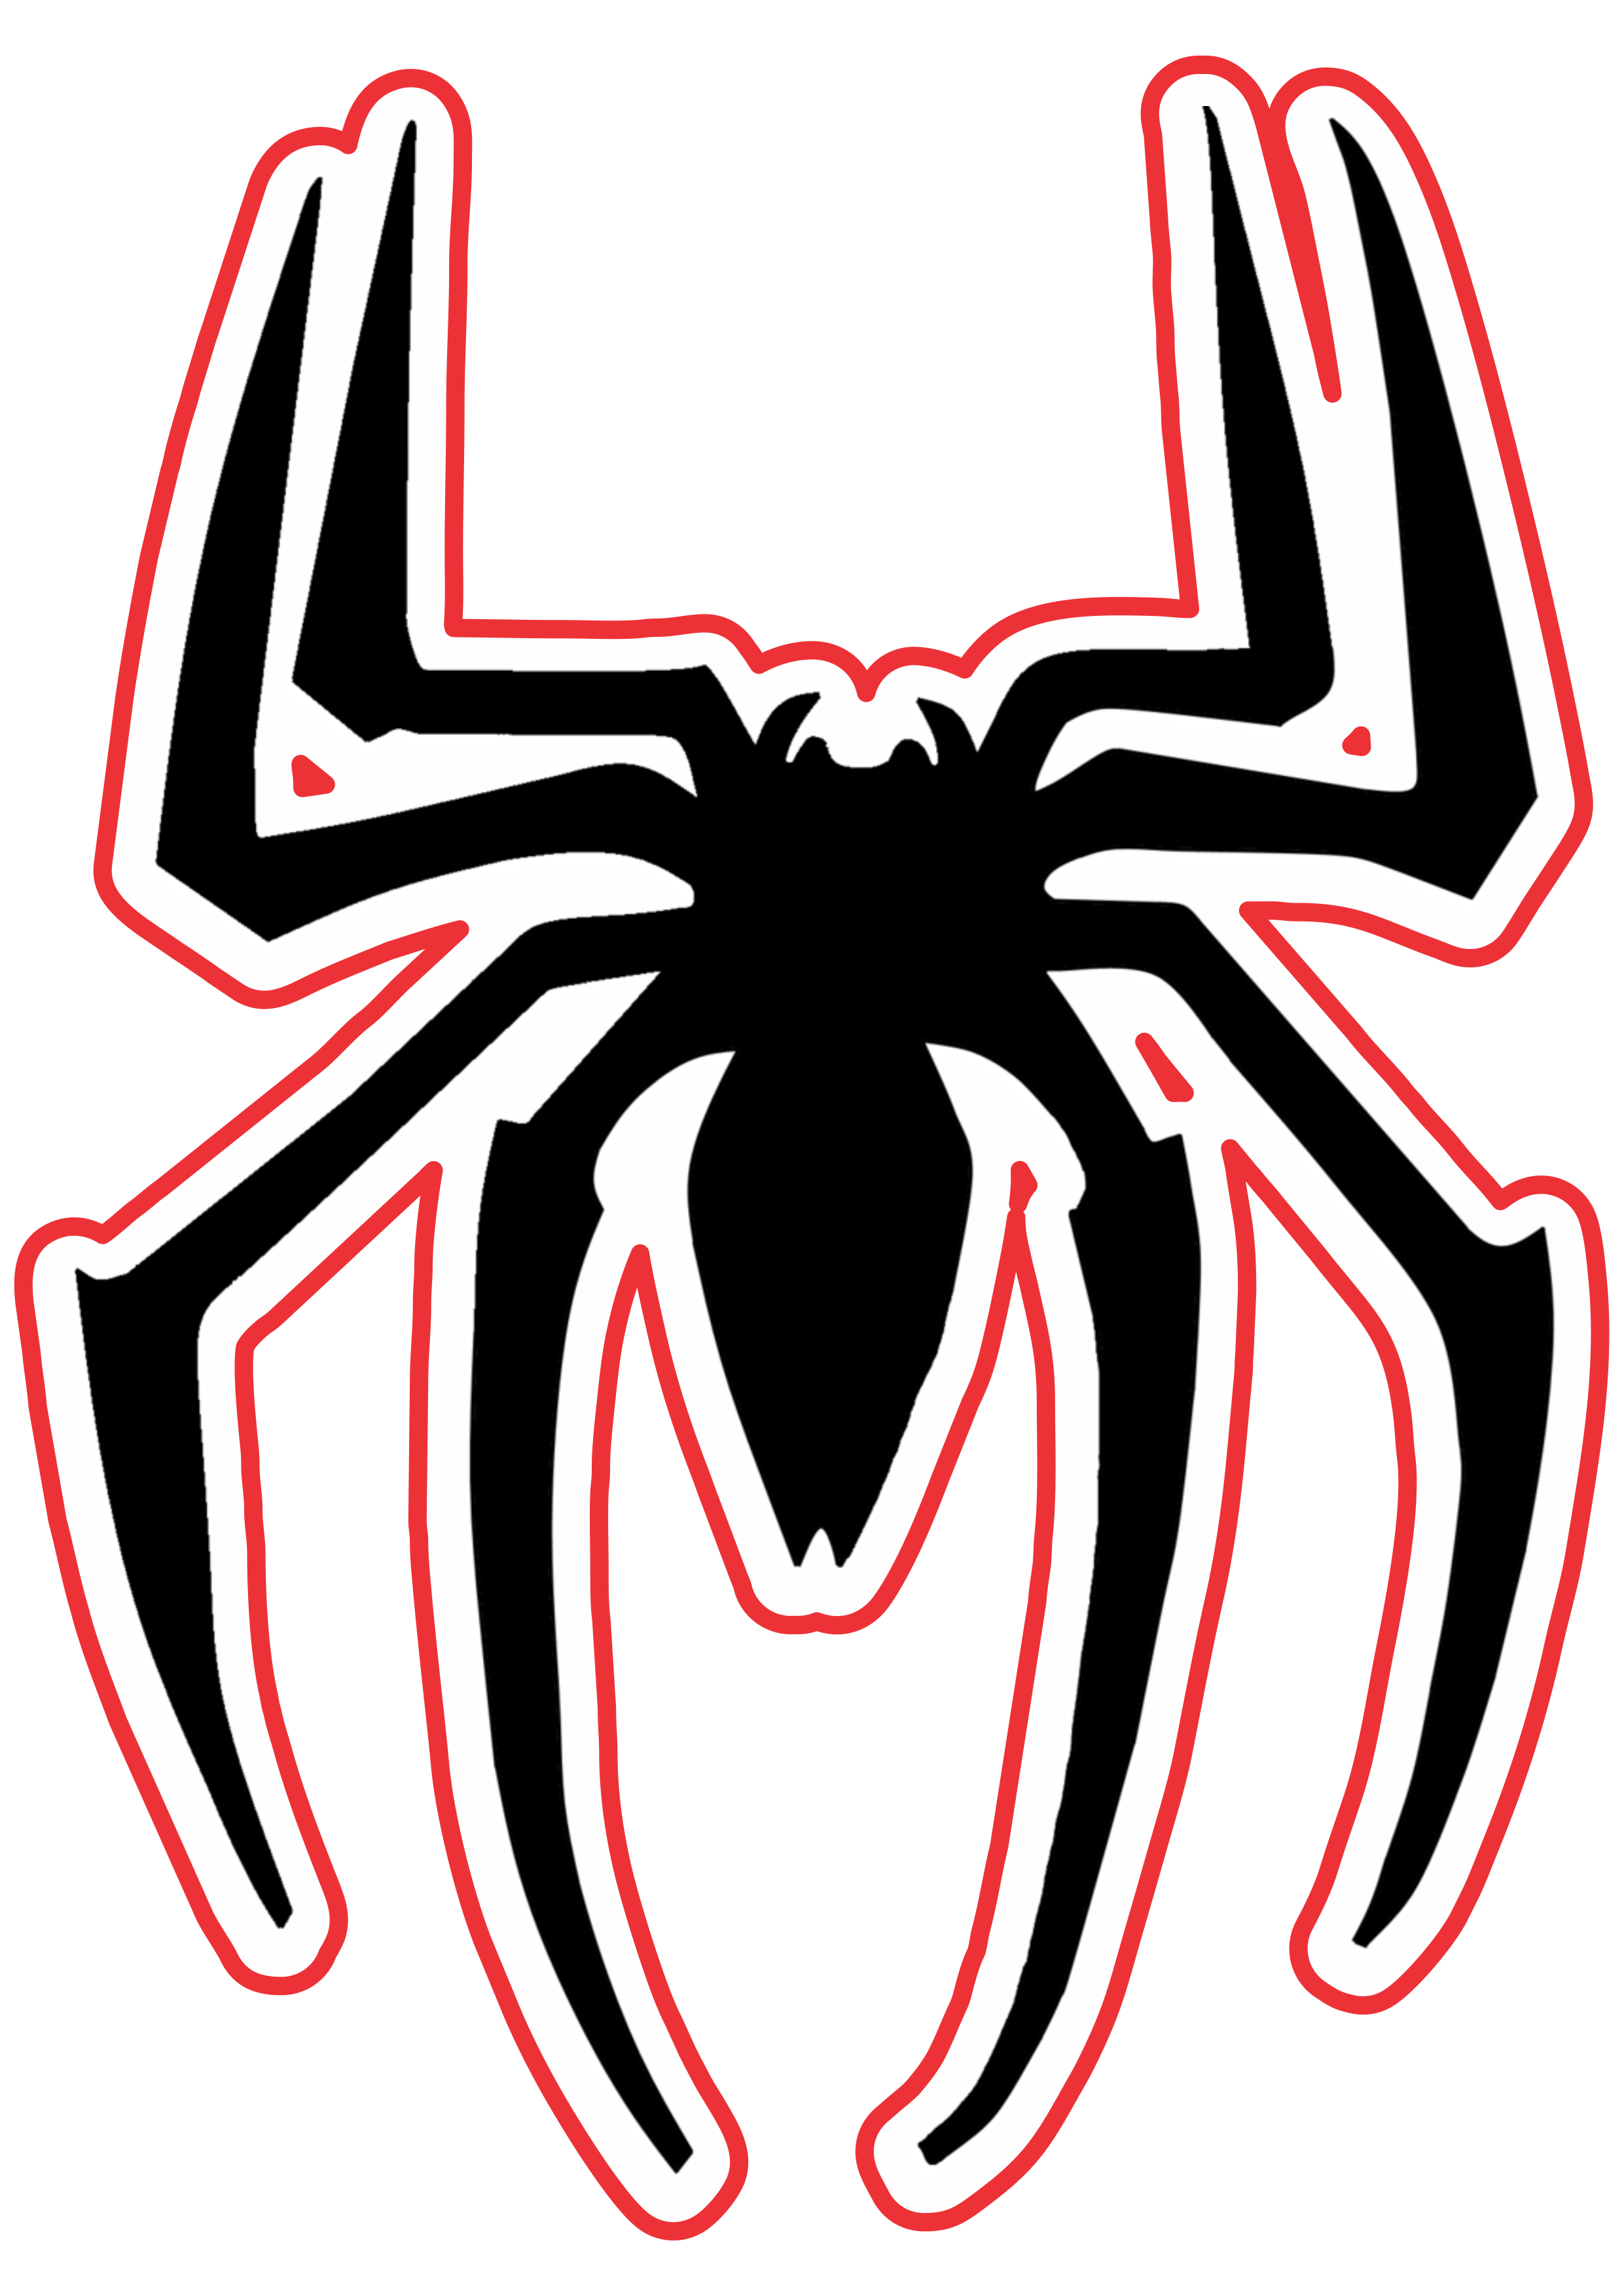 Aranha simbolo homem aranha spider man